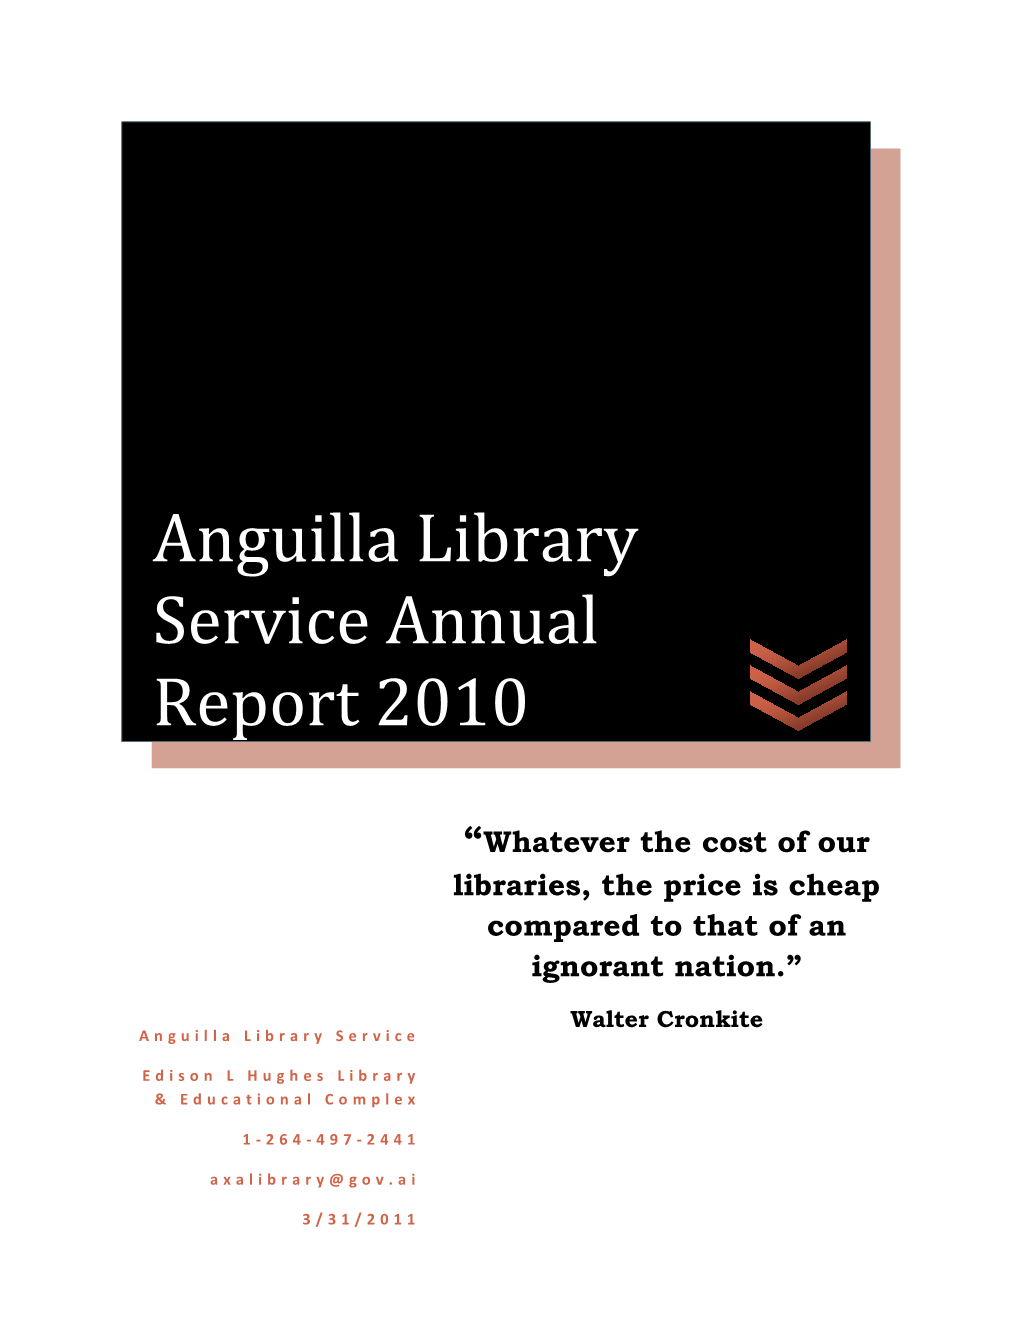 Anguilla Library Service Annual Report 2010